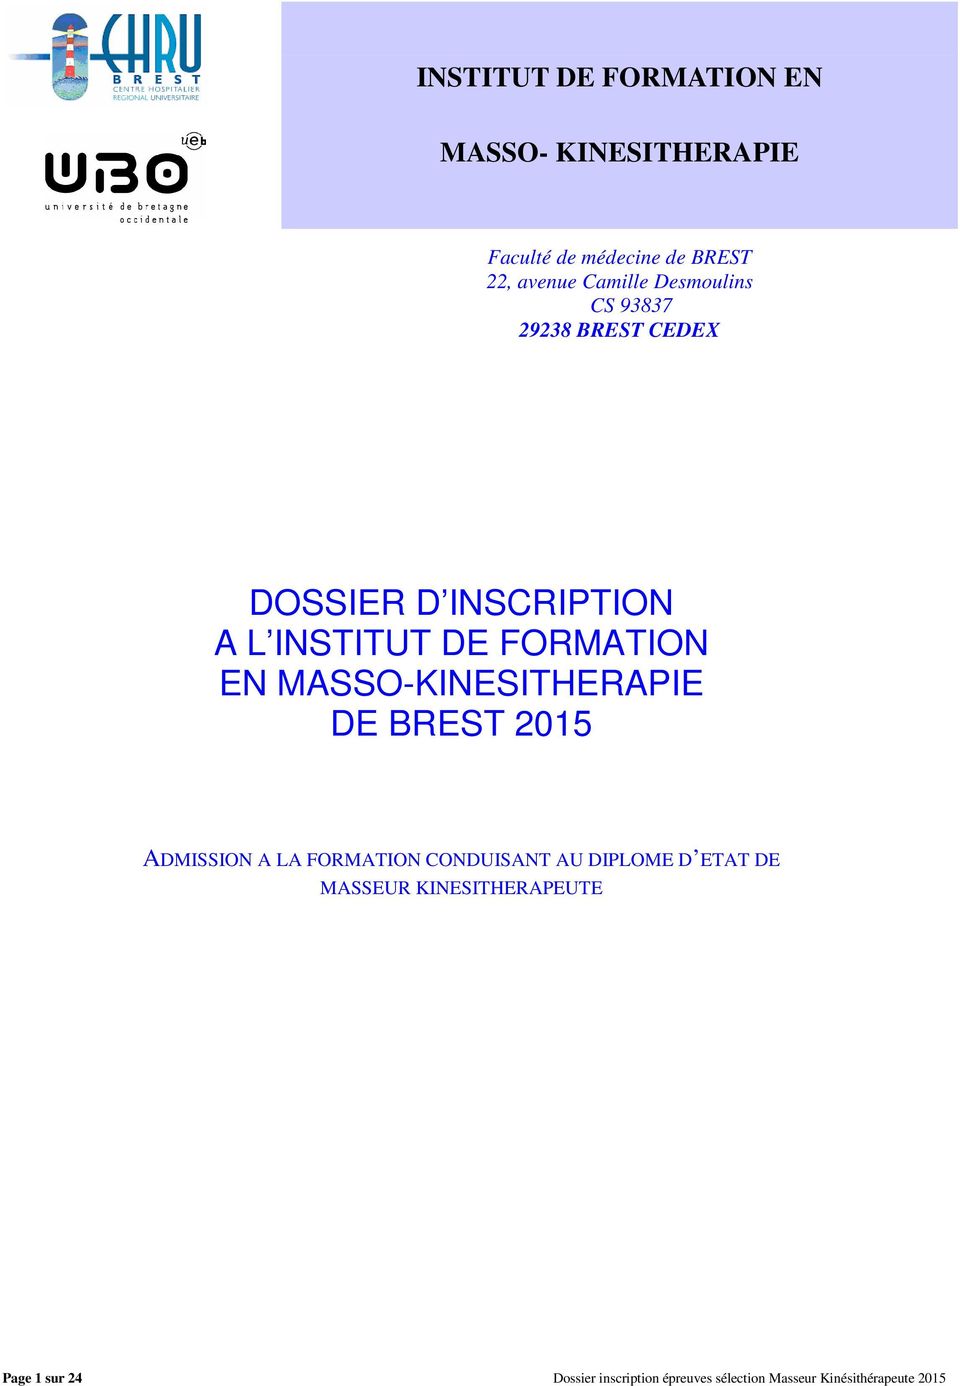 MASSO-KINESITHERAPIE DE BREST 2015 ADMISSION A LA FORMATION CONDUISANT AU DIPLOME D ETAT DE